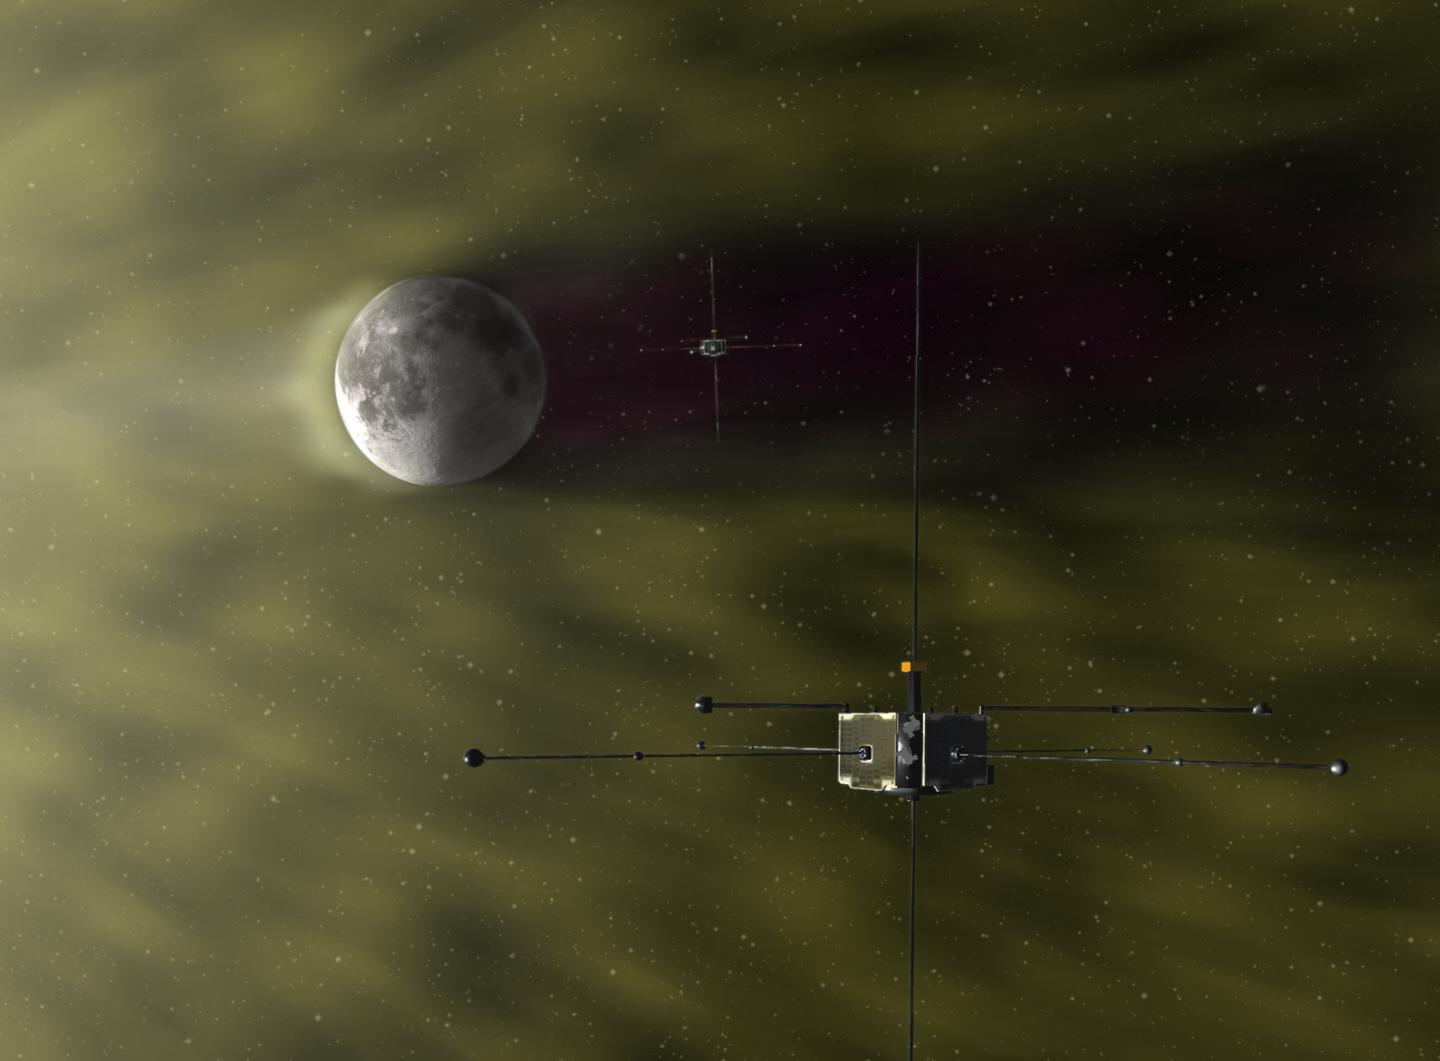 ARTEMIS Spacecraft Orbit the Moon